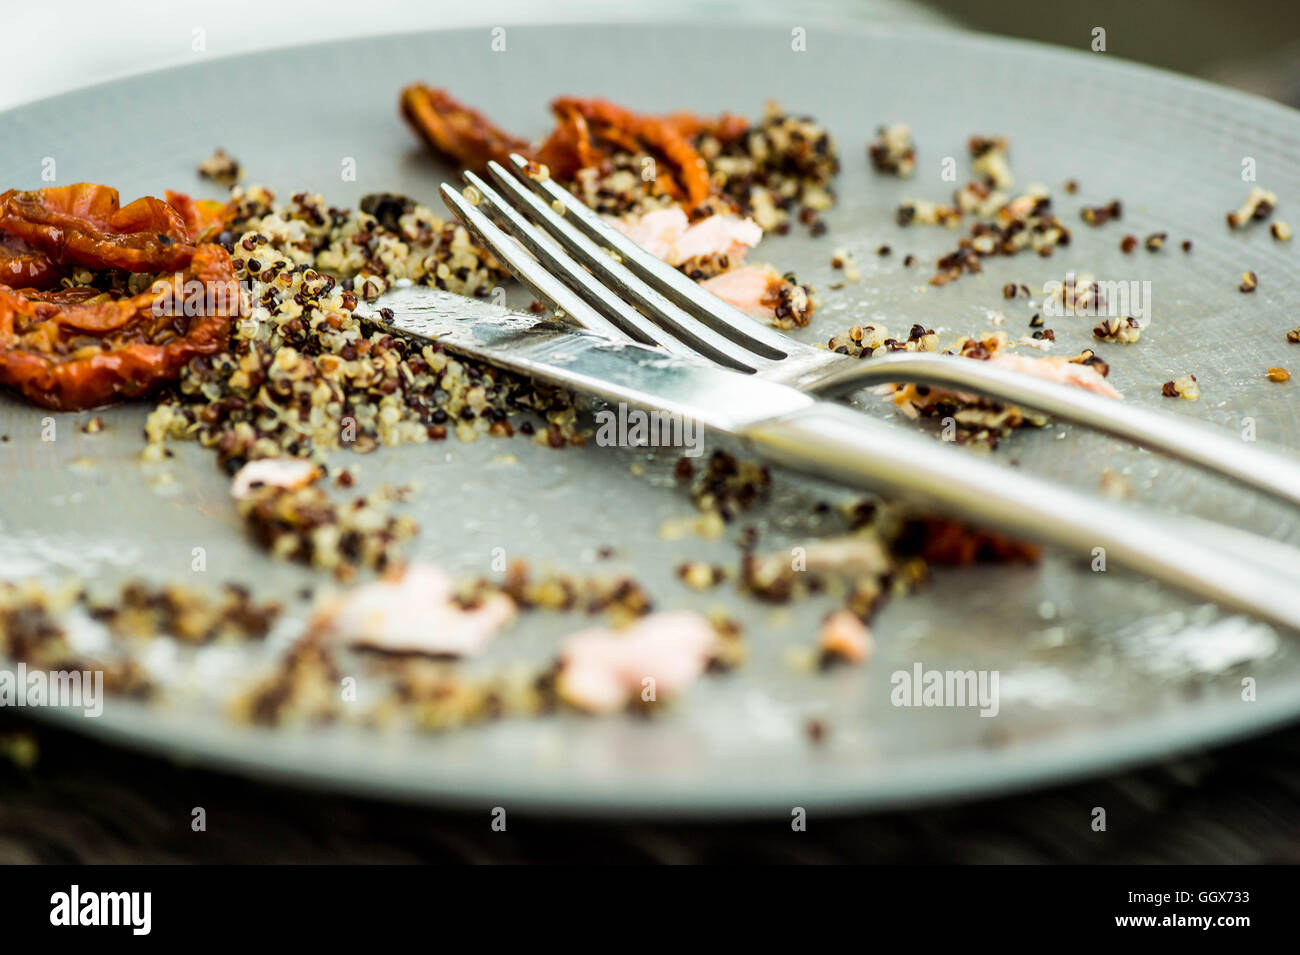 Lebensmittel links Overs auf einem Teller mit Messer und Gabel nach Abschluss einer Mahlzeit Stockfoto